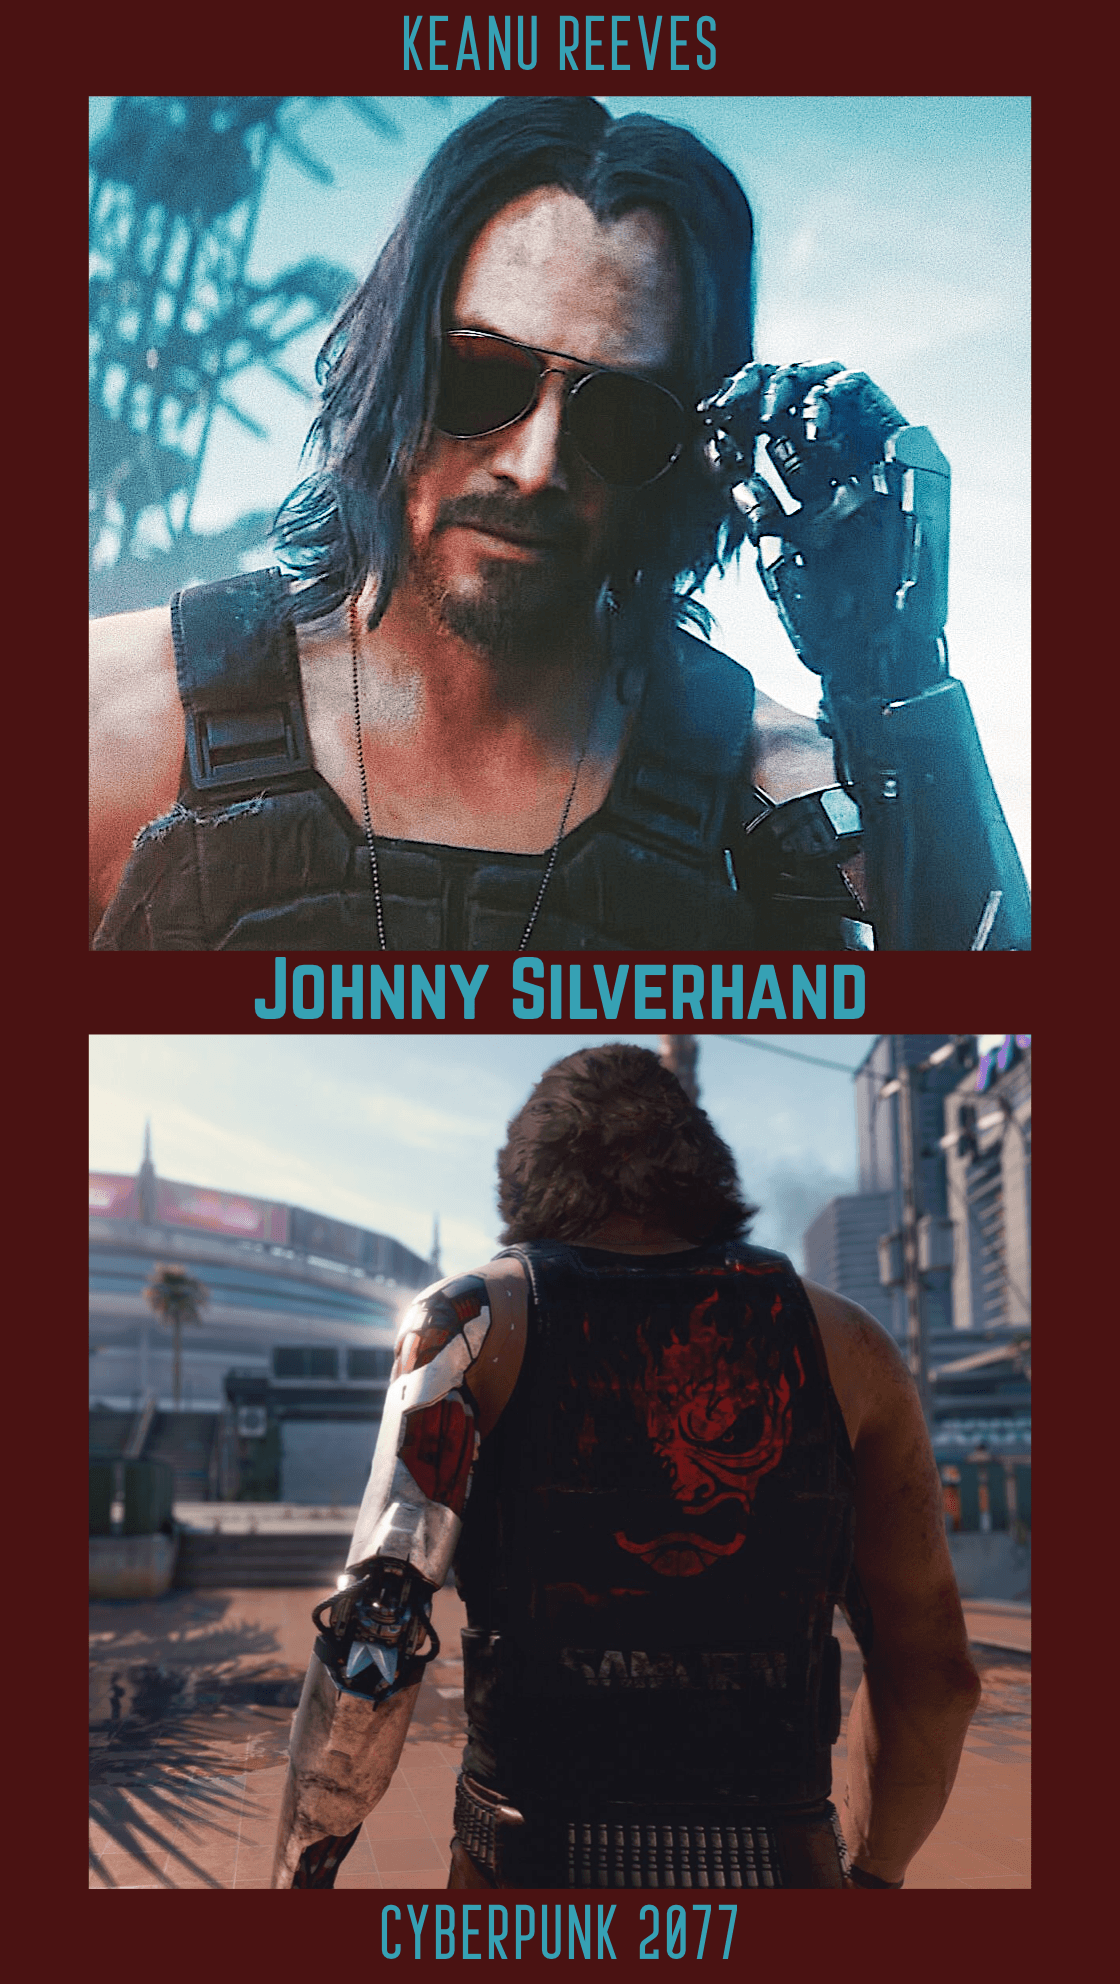 Keanu Reeves as Johnny Silverhand in Cyberpunk 2077. Nerd